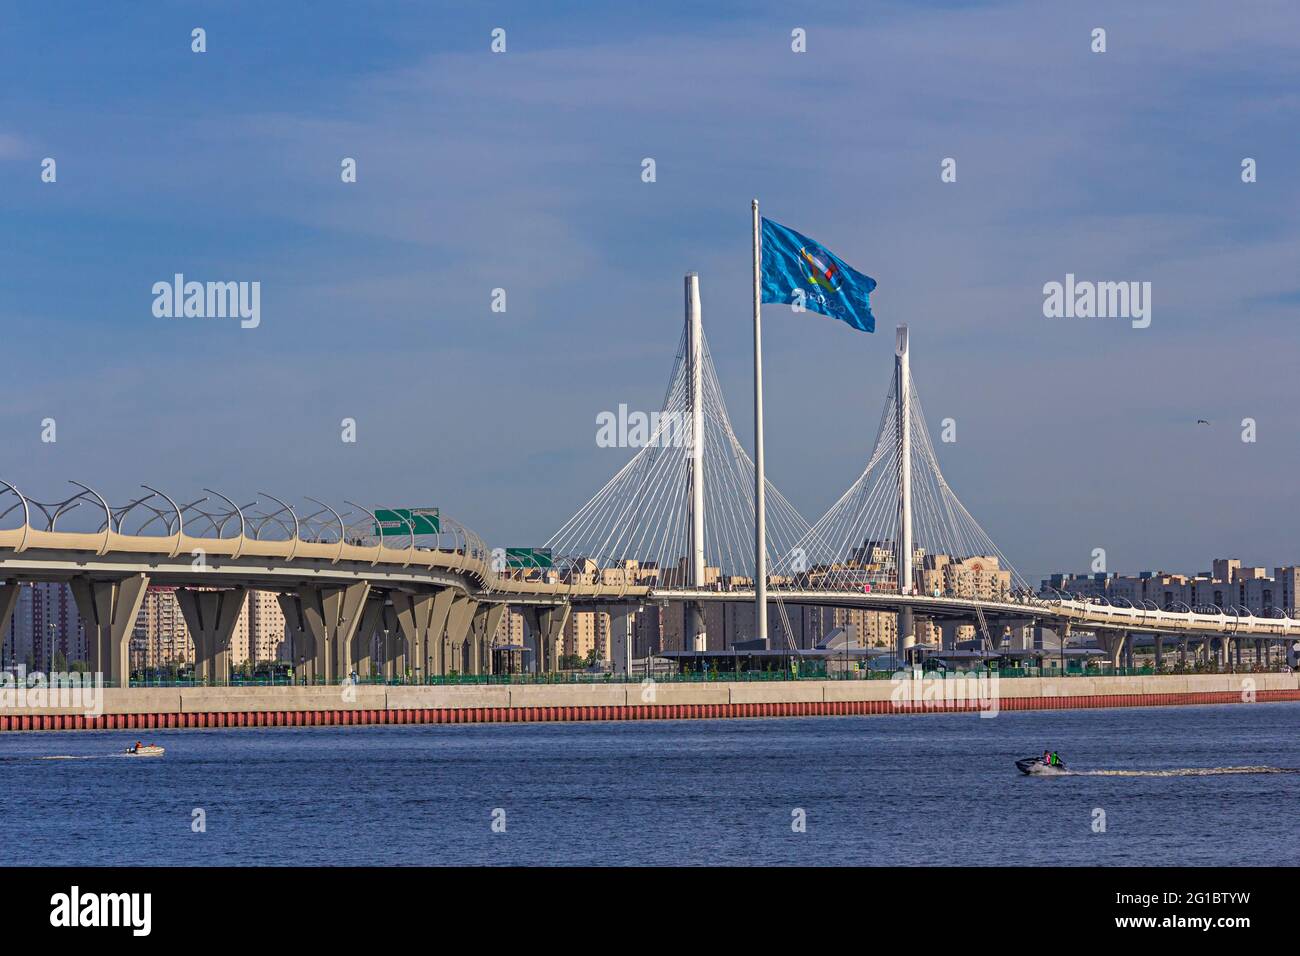 Russia, San Pietroburgo, 07 giugno 2021:la vista della bandiera ufficiale del campionato europeo di calcio UEFA e lo stadio Gazprom Arena, Euro 2020, 2021 Foto Stock